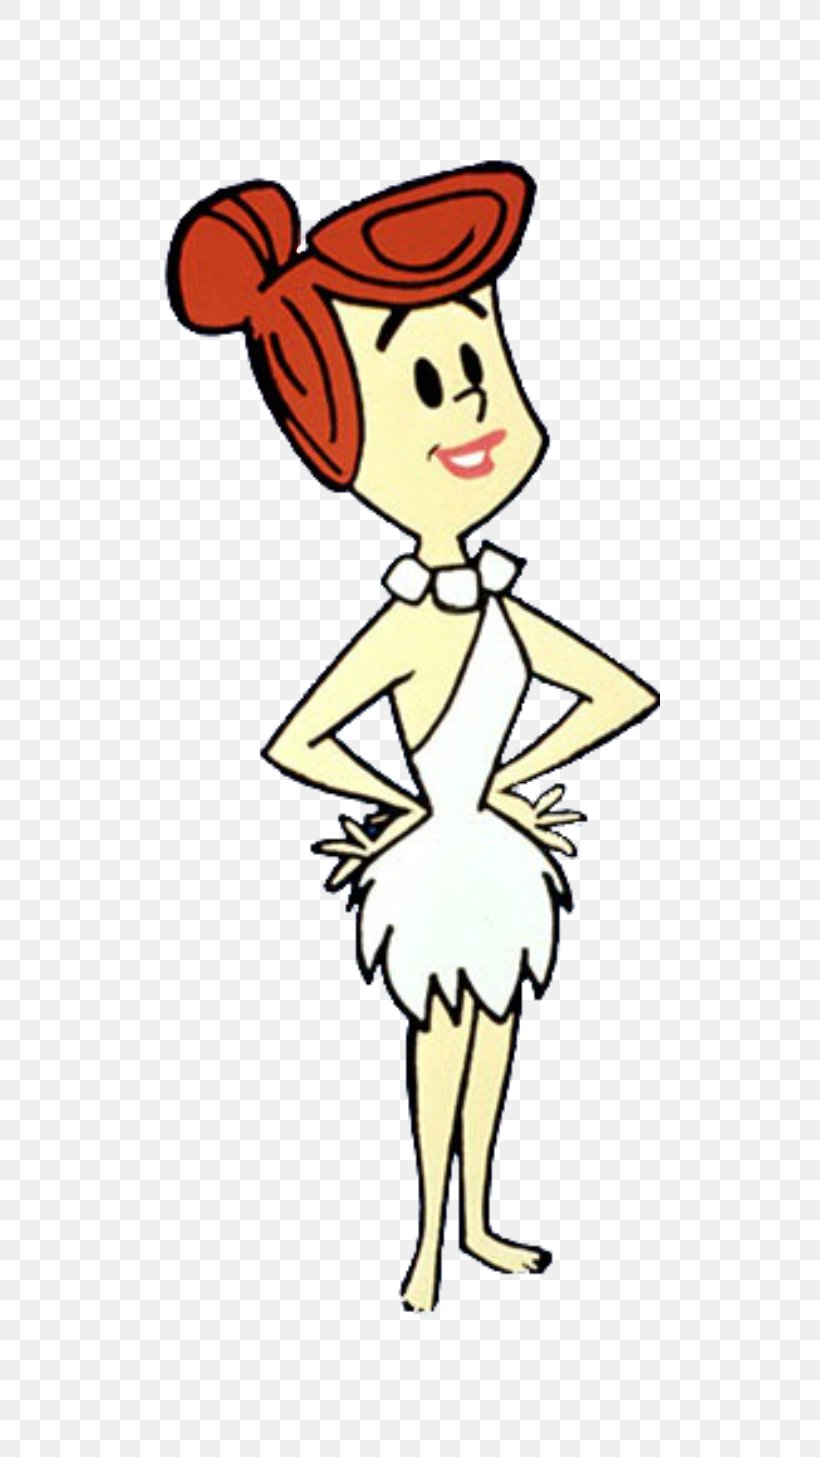 Wilma Flintstone Betty Rubble Cartoon Illustration Clip Art, PNG, 500x1457px, Wilma Flintstone, Art, Betty Rubble, Cartoon, Character Download Free